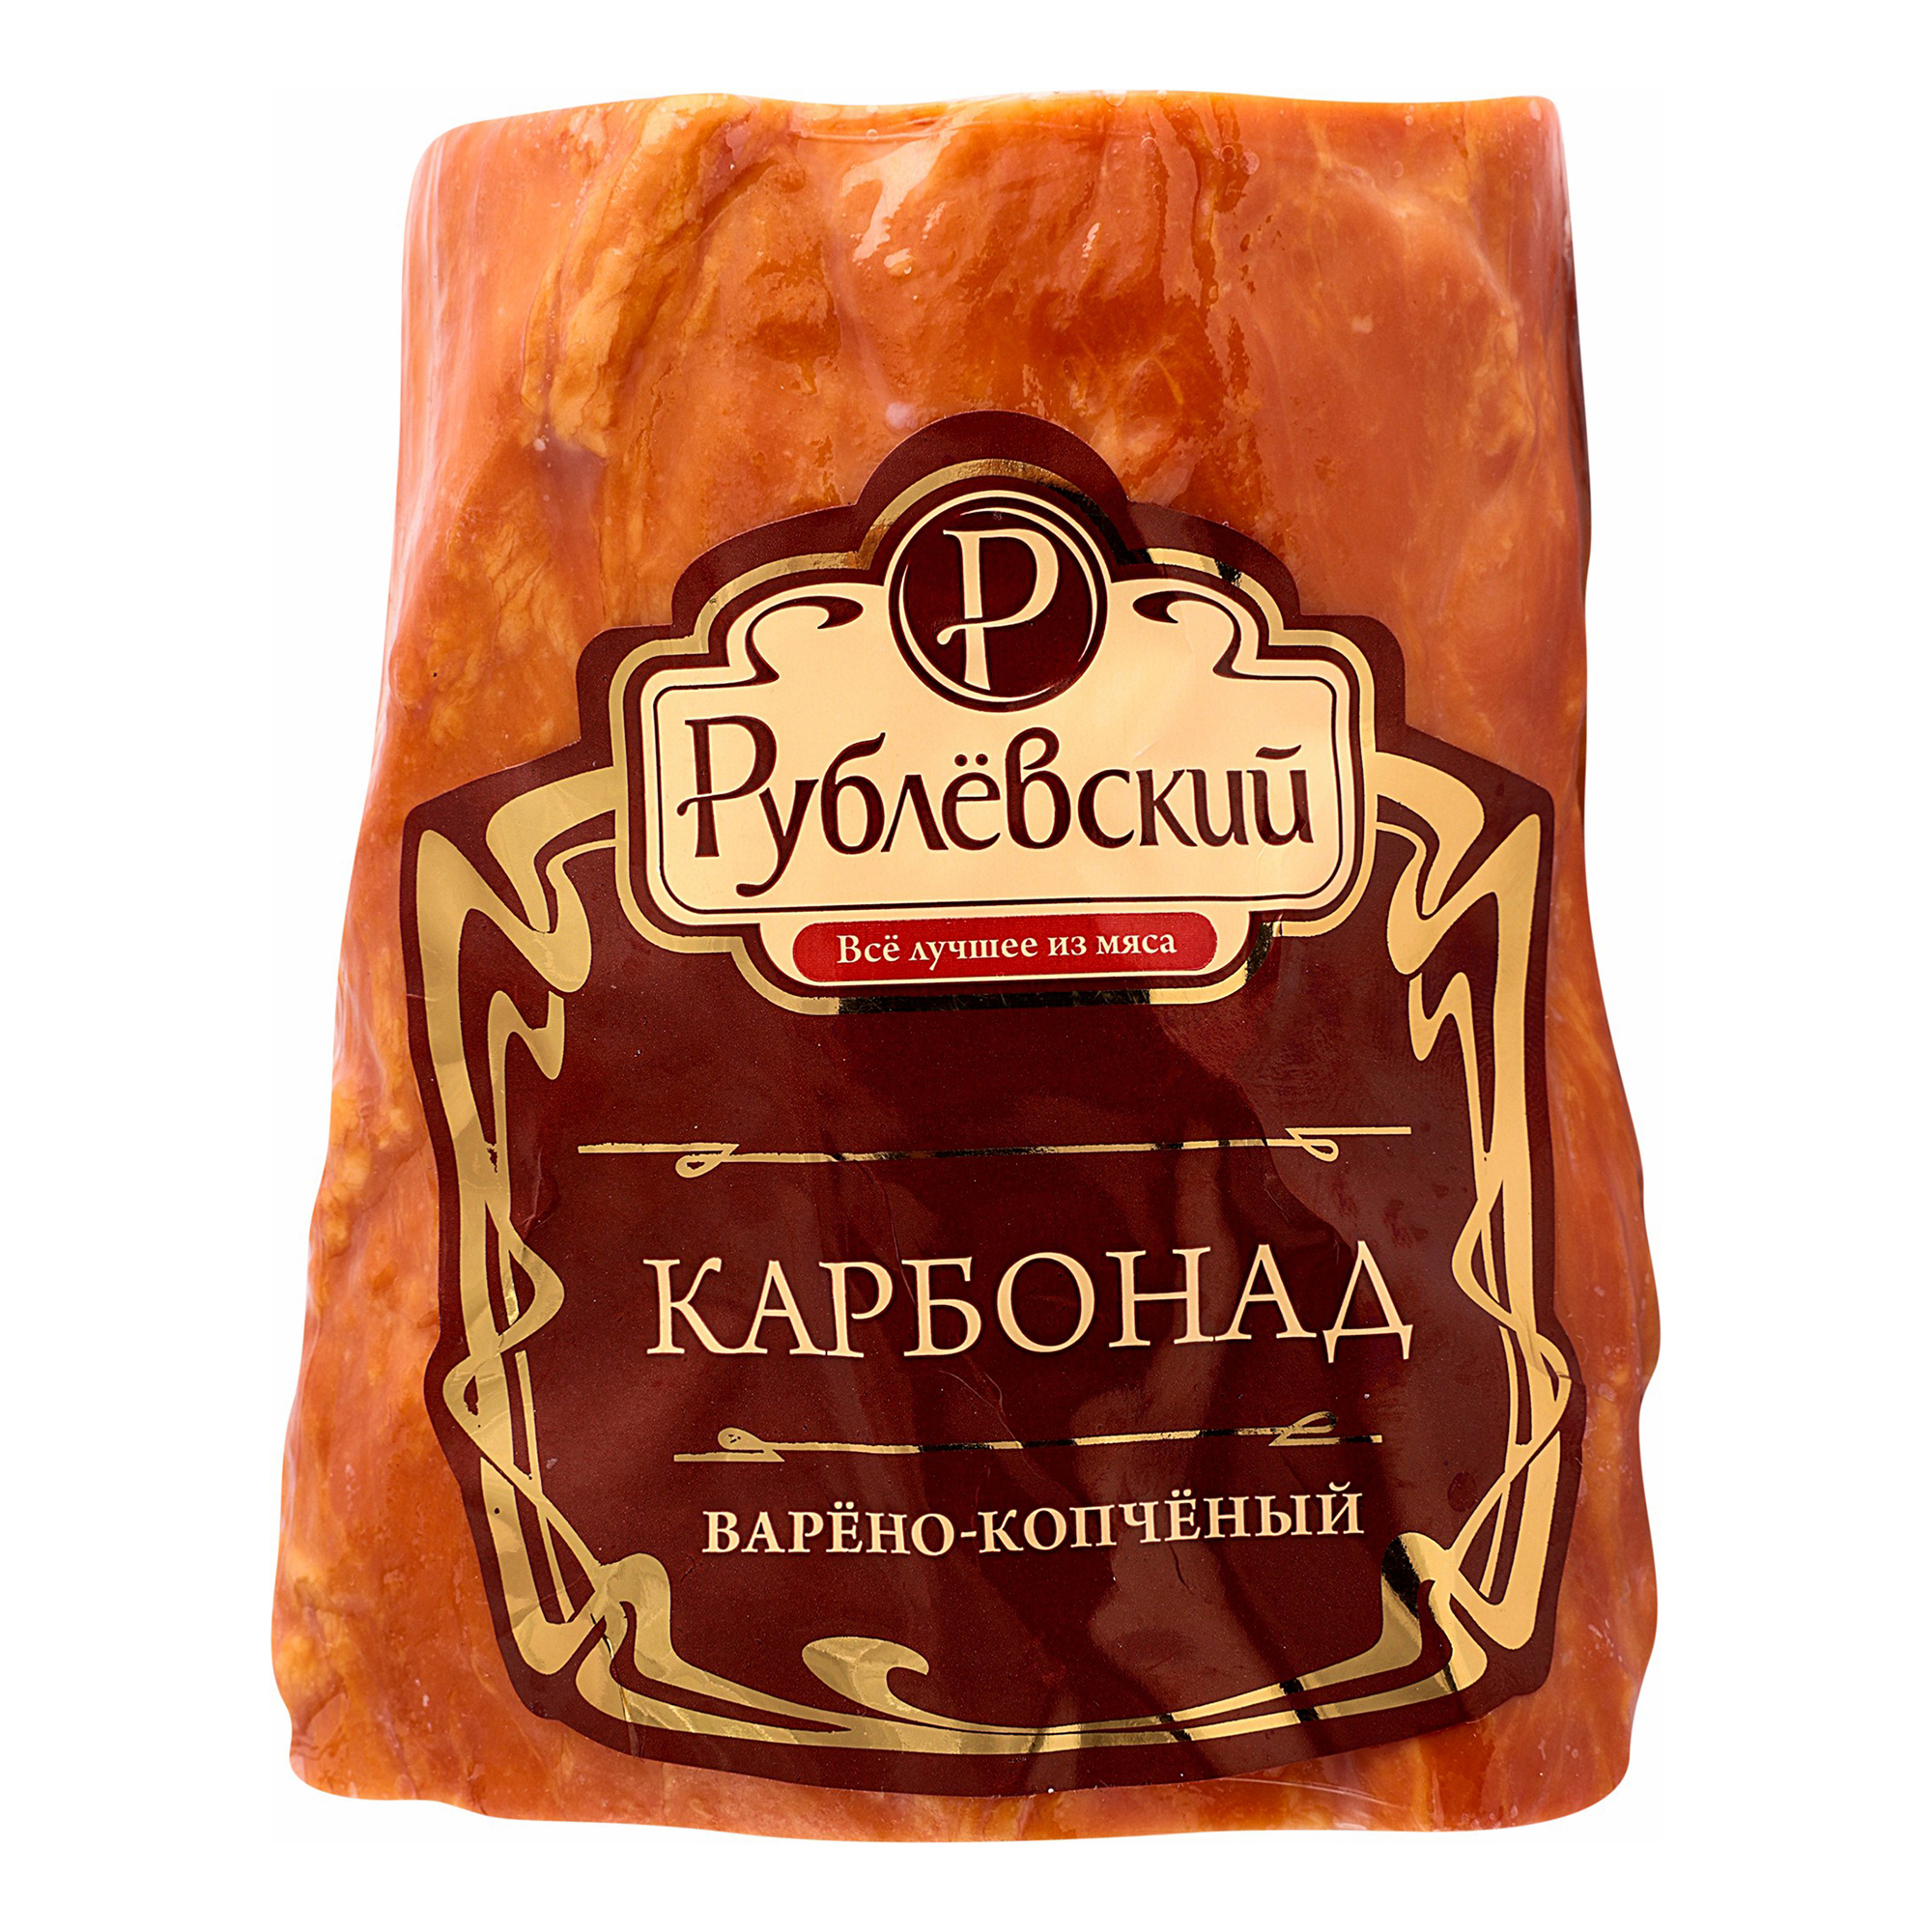 Карбонад Рублевский варено-копченый +-1,1 кг